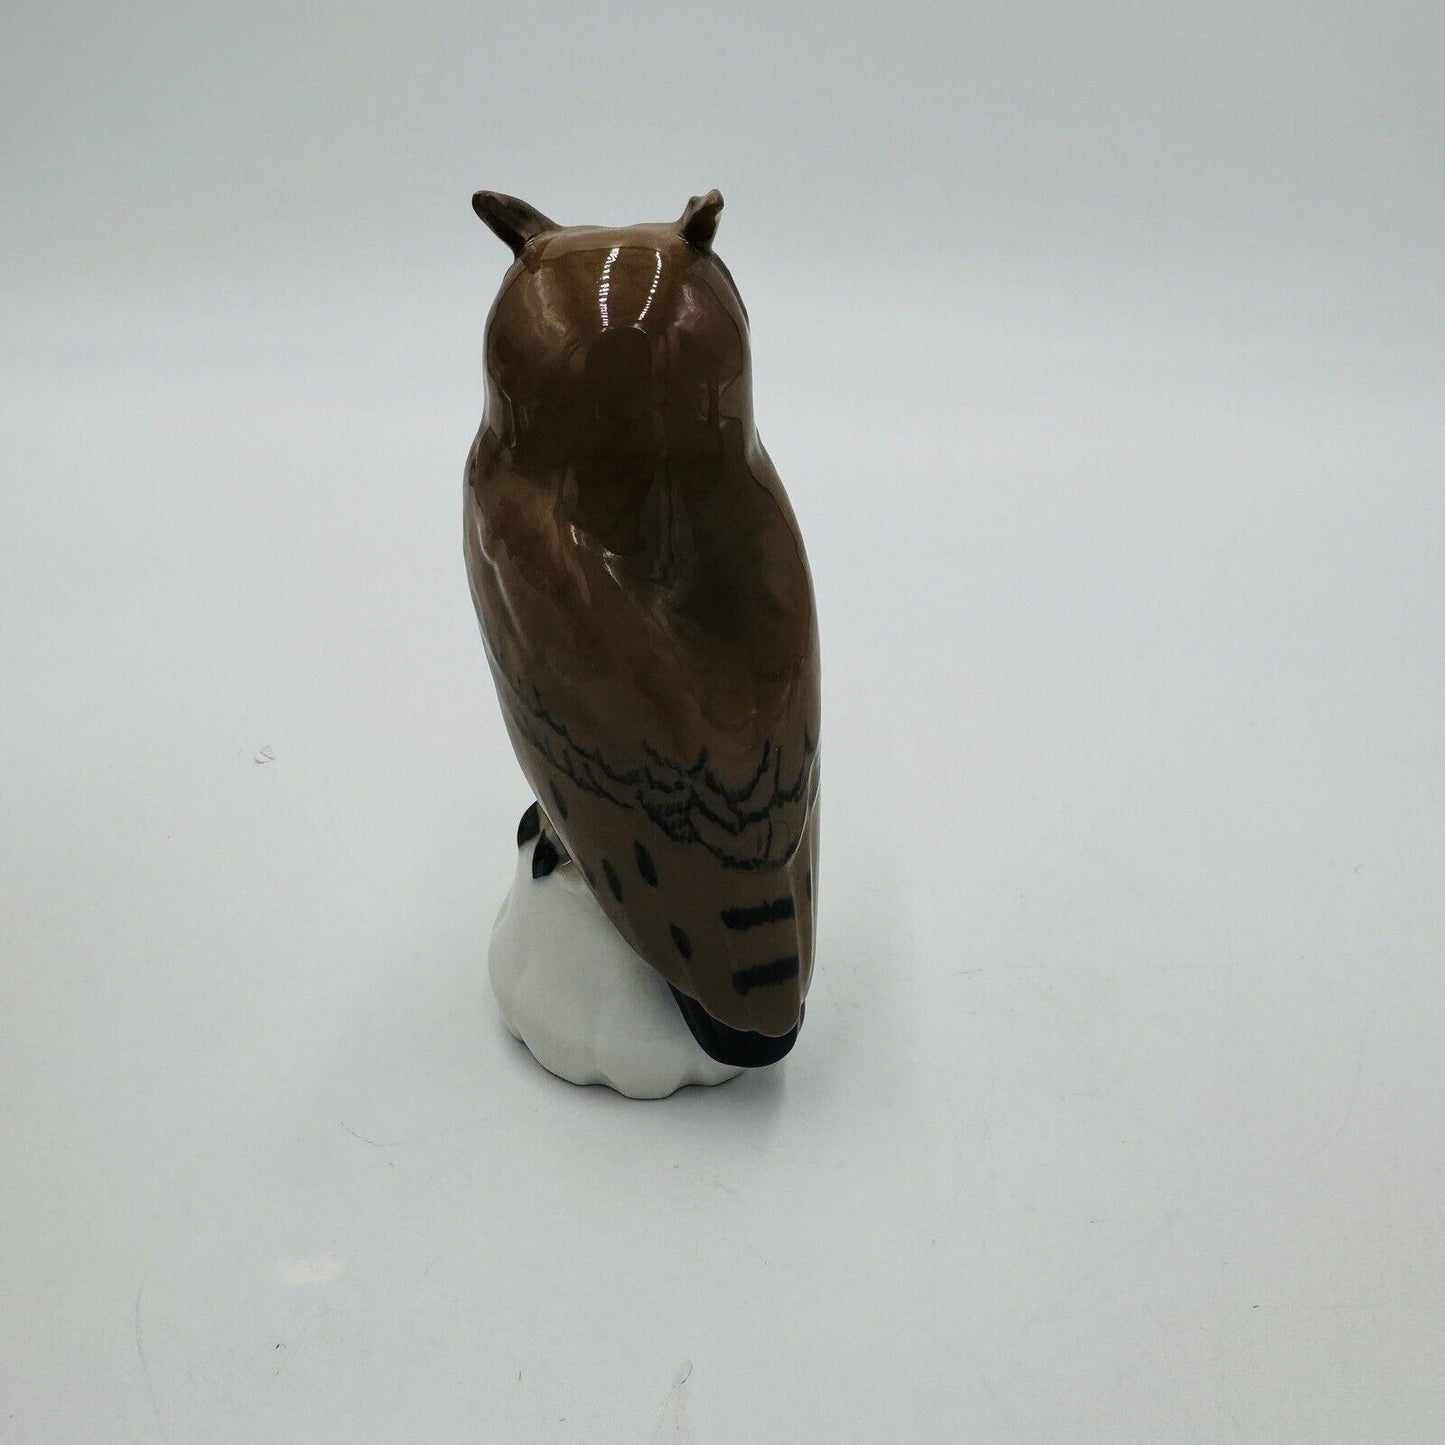 Bing & Grondahl COPENHAGEN Denmark Porcelain OWL 4 1/2"h Figurine #1800